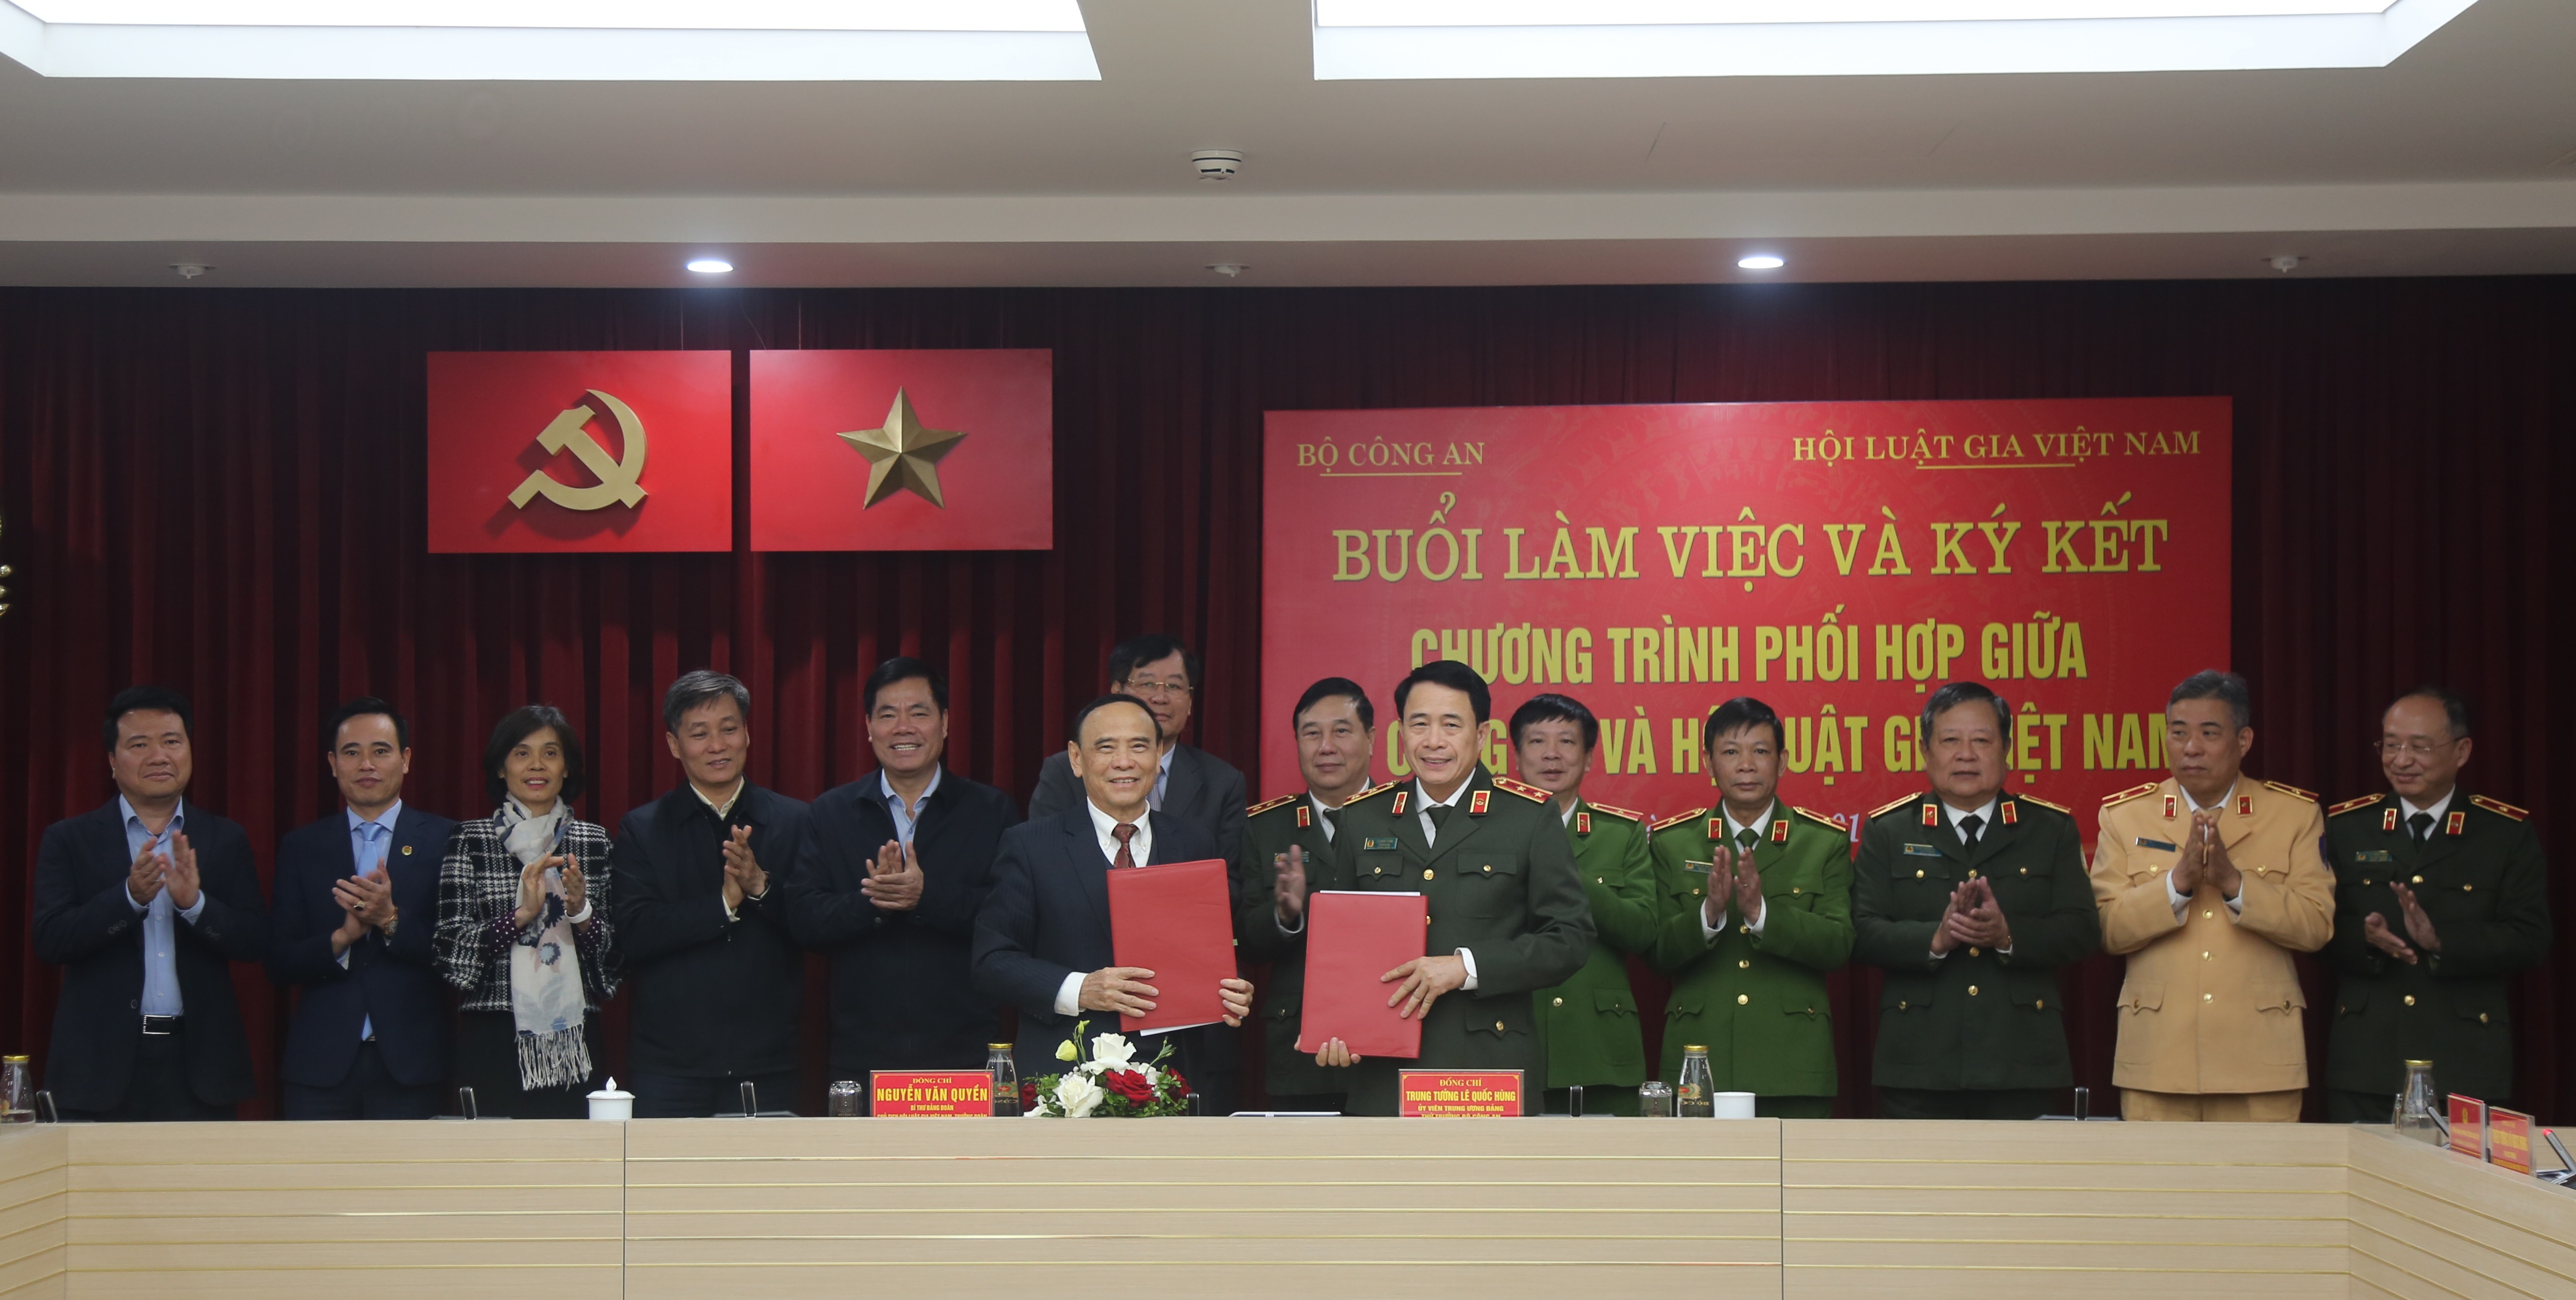 Hội Luật gia Việt Nam và Bộ Công an ký kết chương trình phối hợp công tác